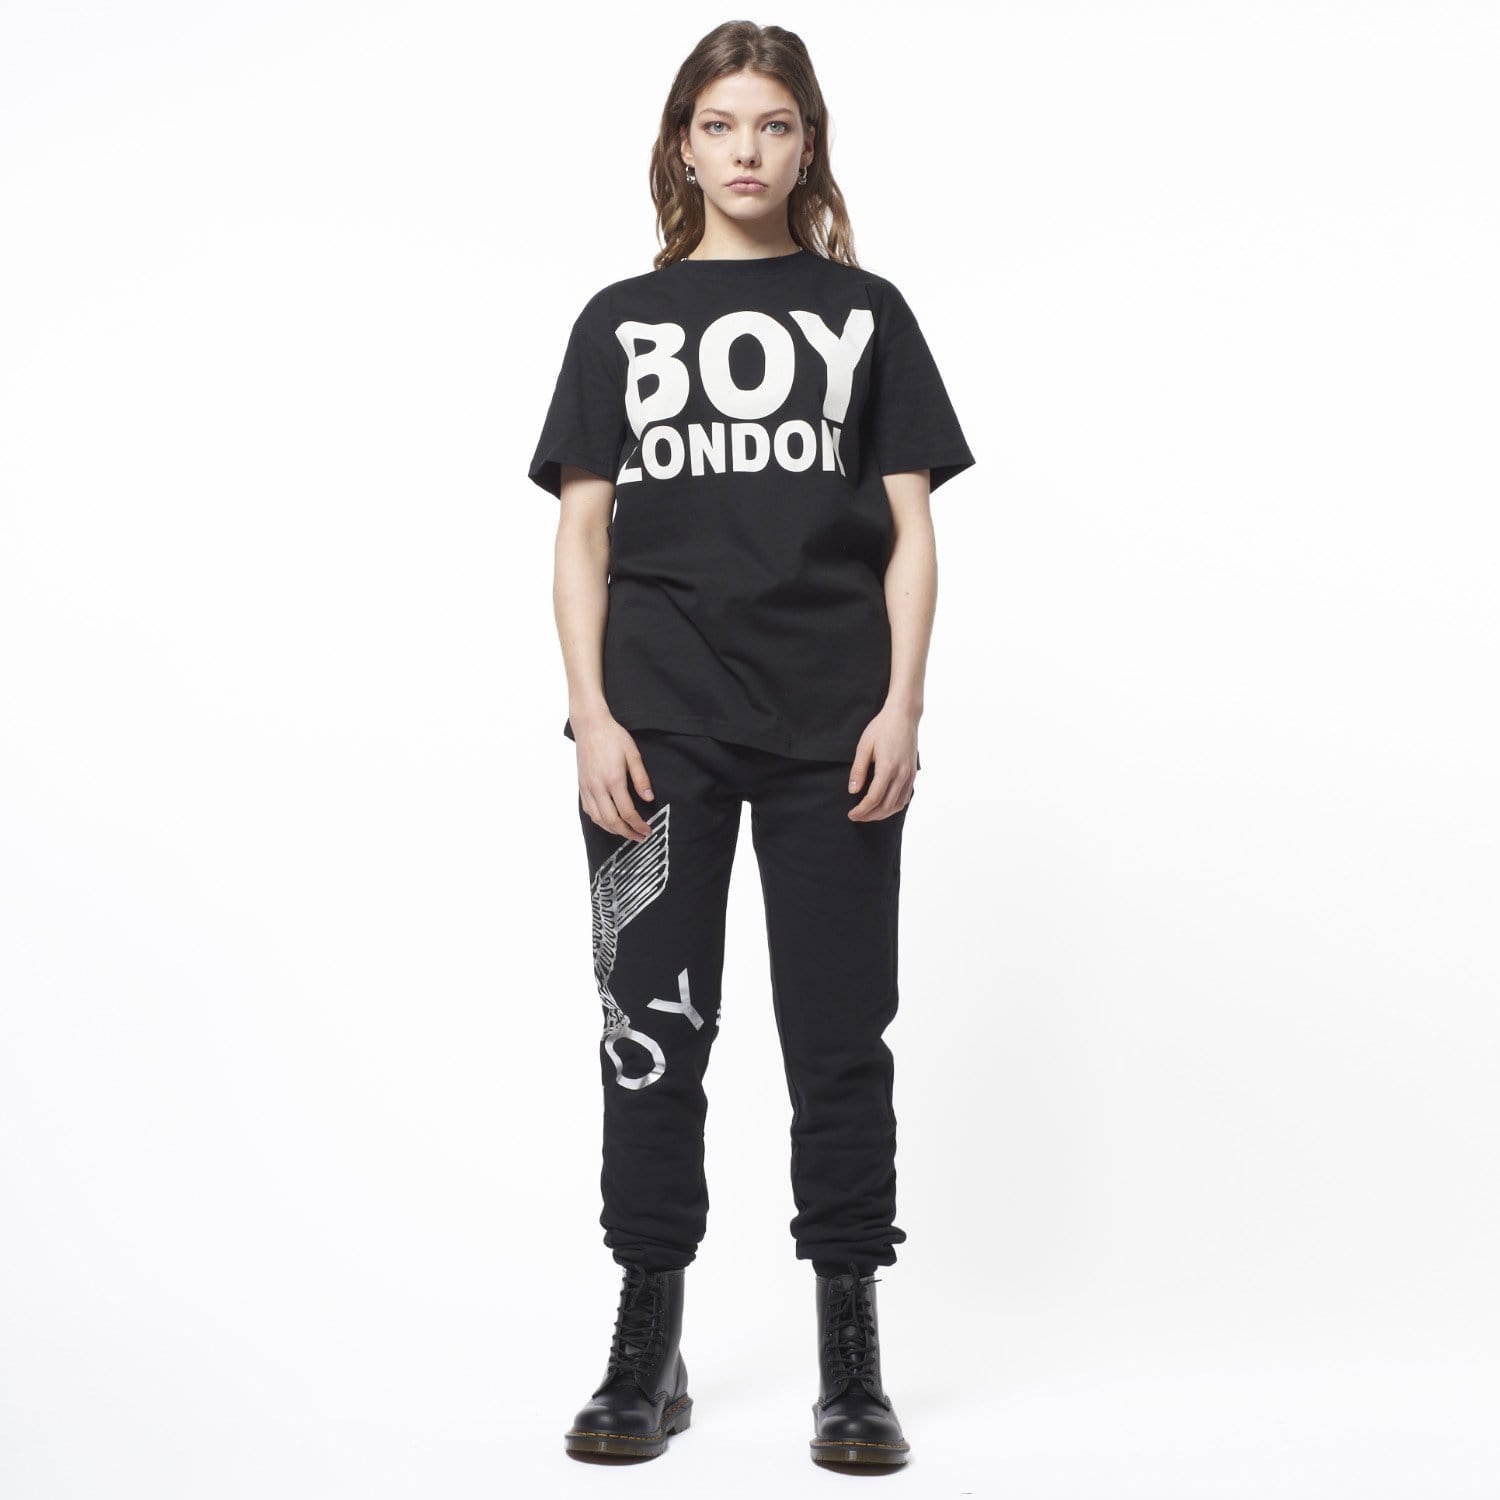 BOY LONDON T-SHIRT - BLACK/WHITE